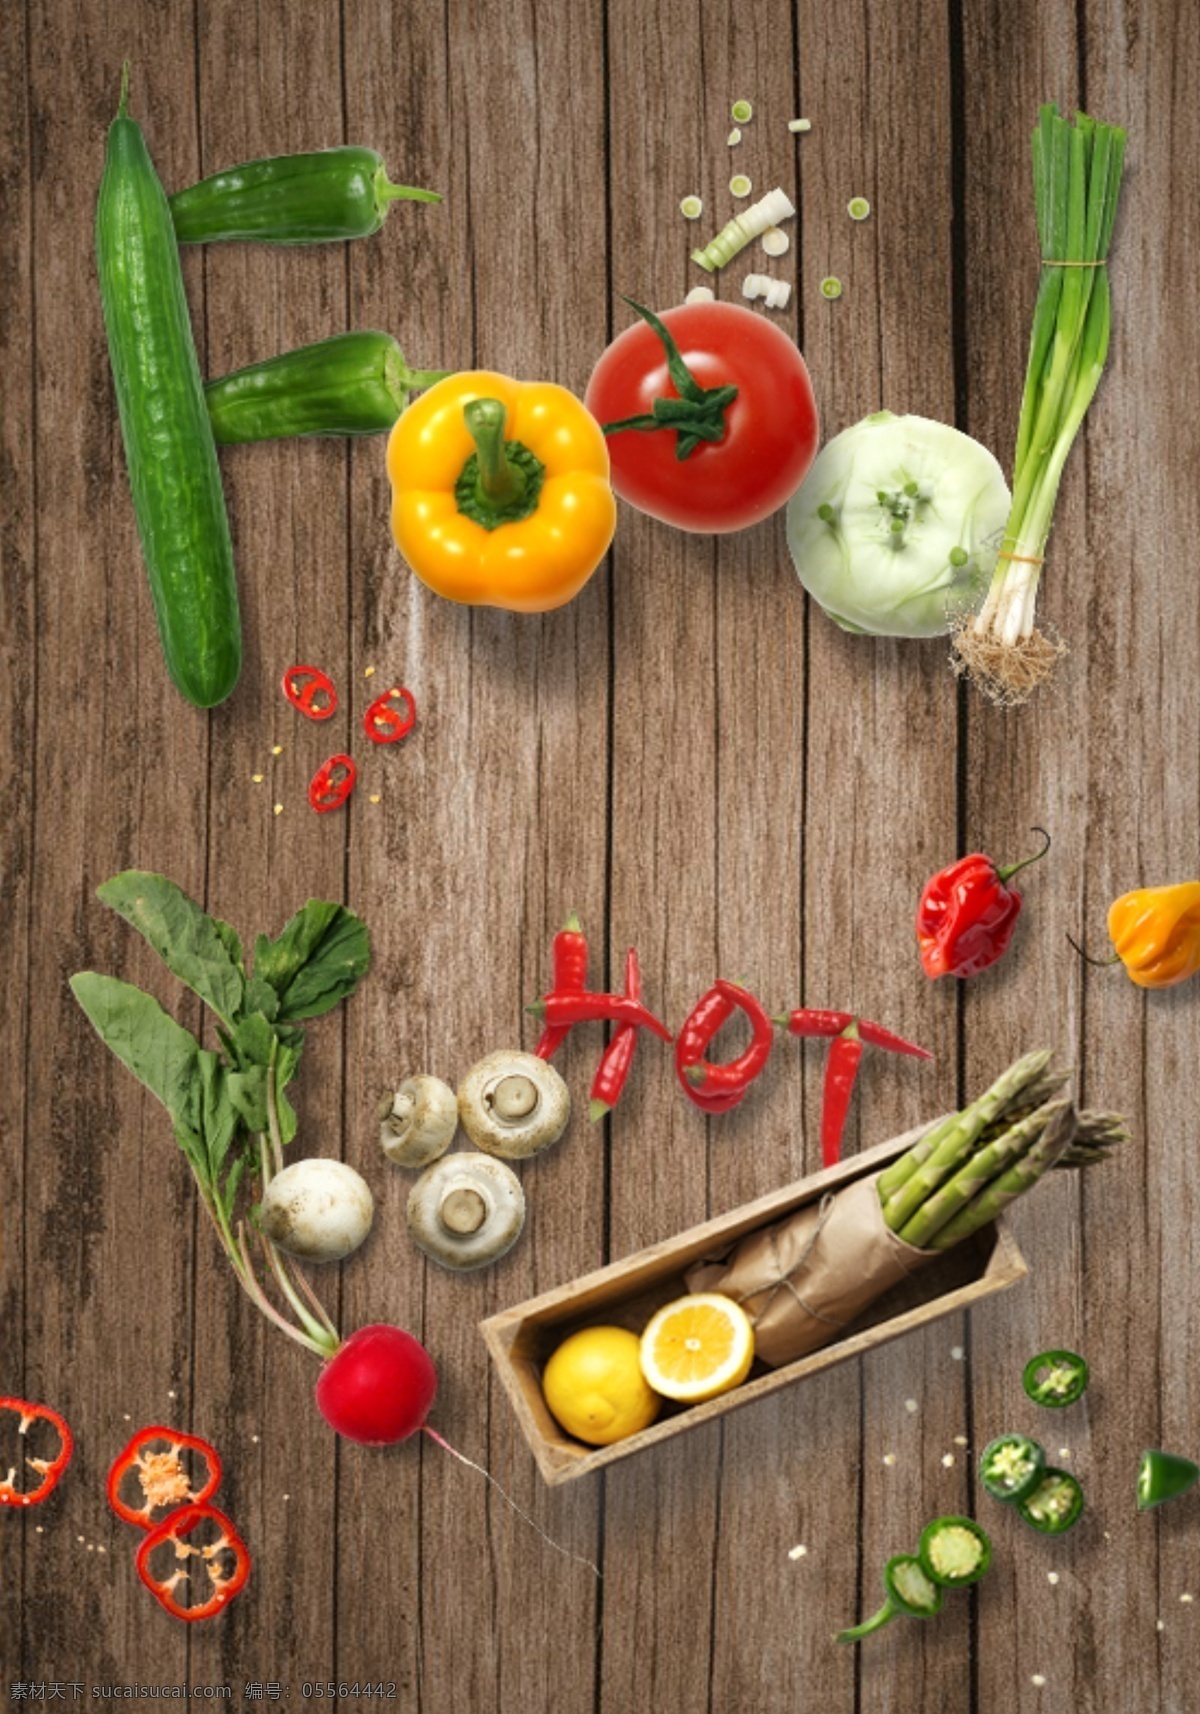 3d 效果 蔬菜 海报 立体海报 3d效果 水果蔬菜海报 超市海报 走廊挂画 广告画面 免抠蔬果素材 分层果蔬素材 平面